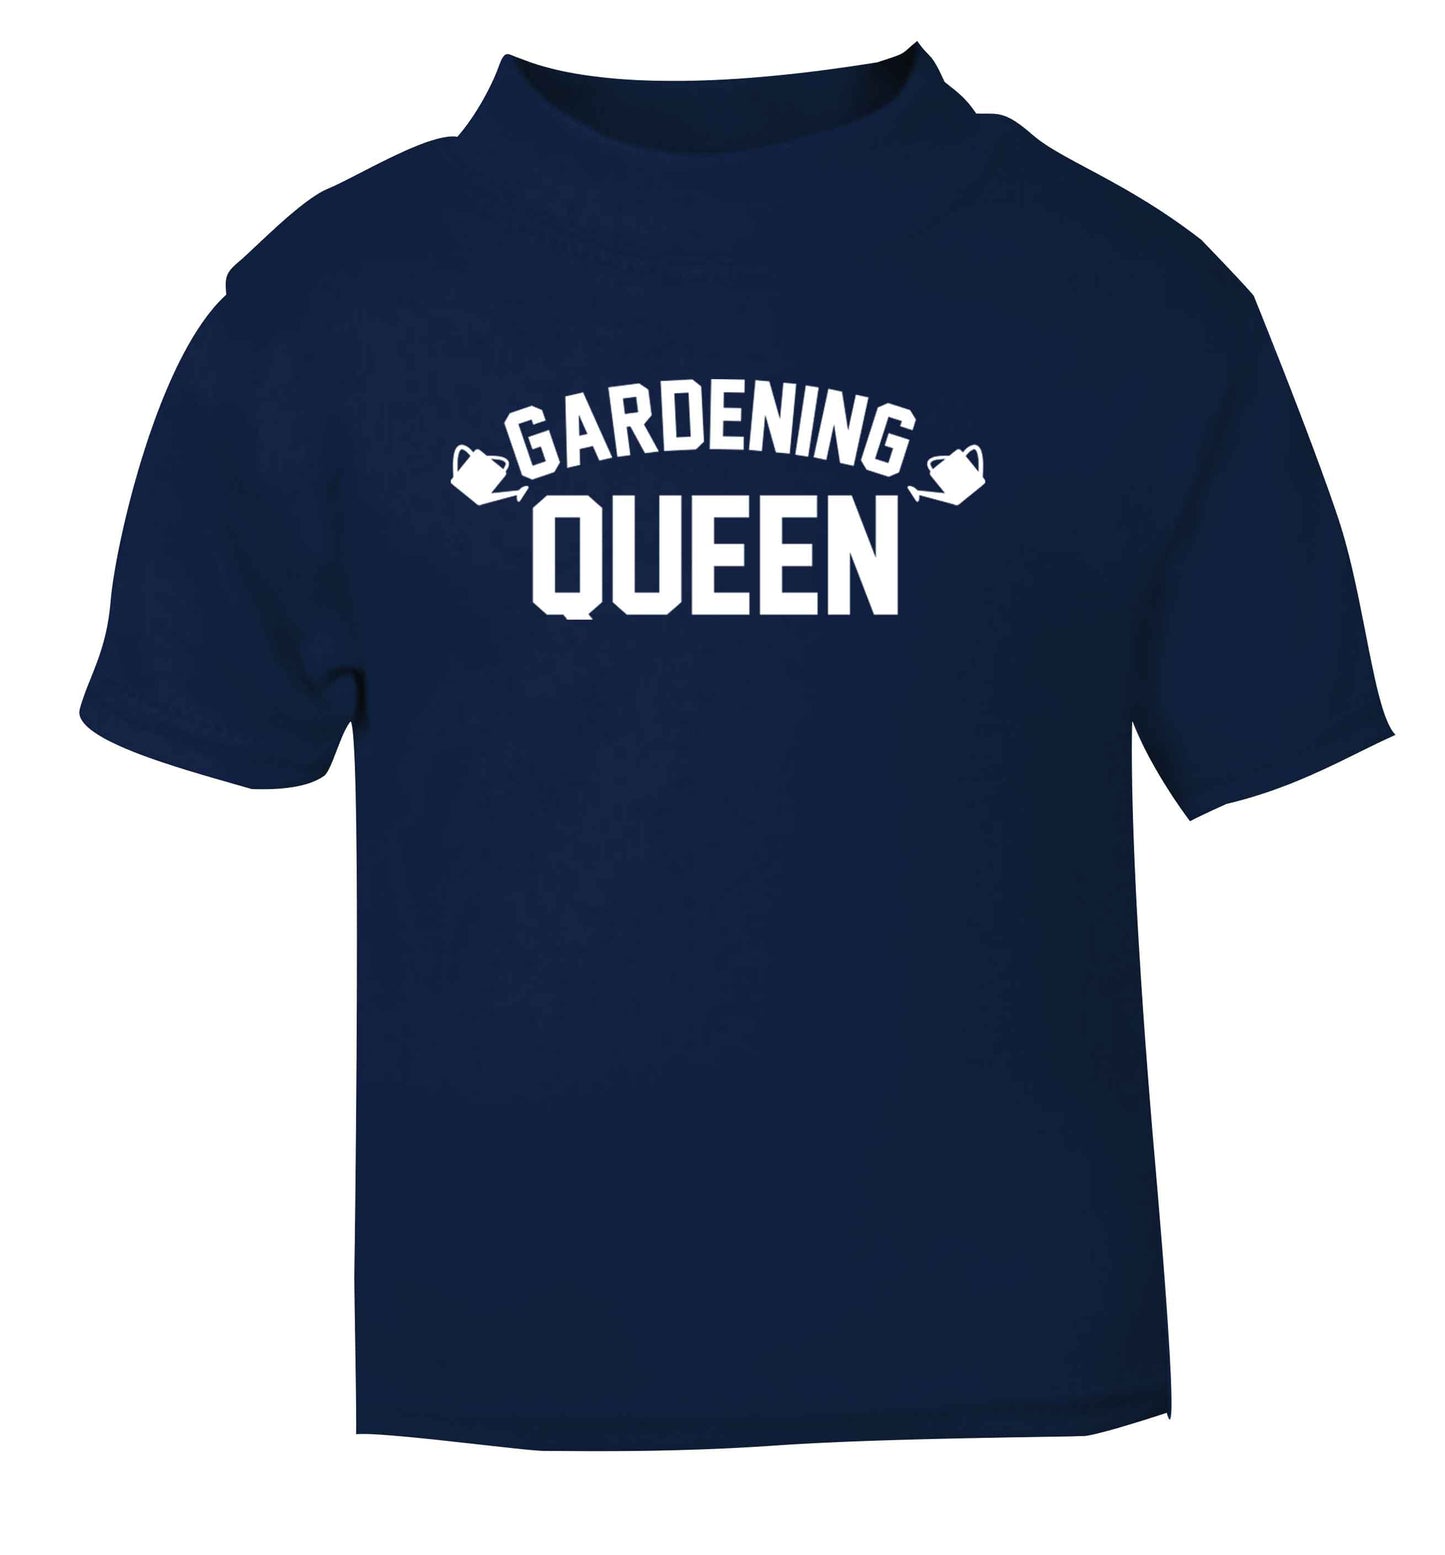 Gardening queen navy Baby Toddler Tshirt 2 Years